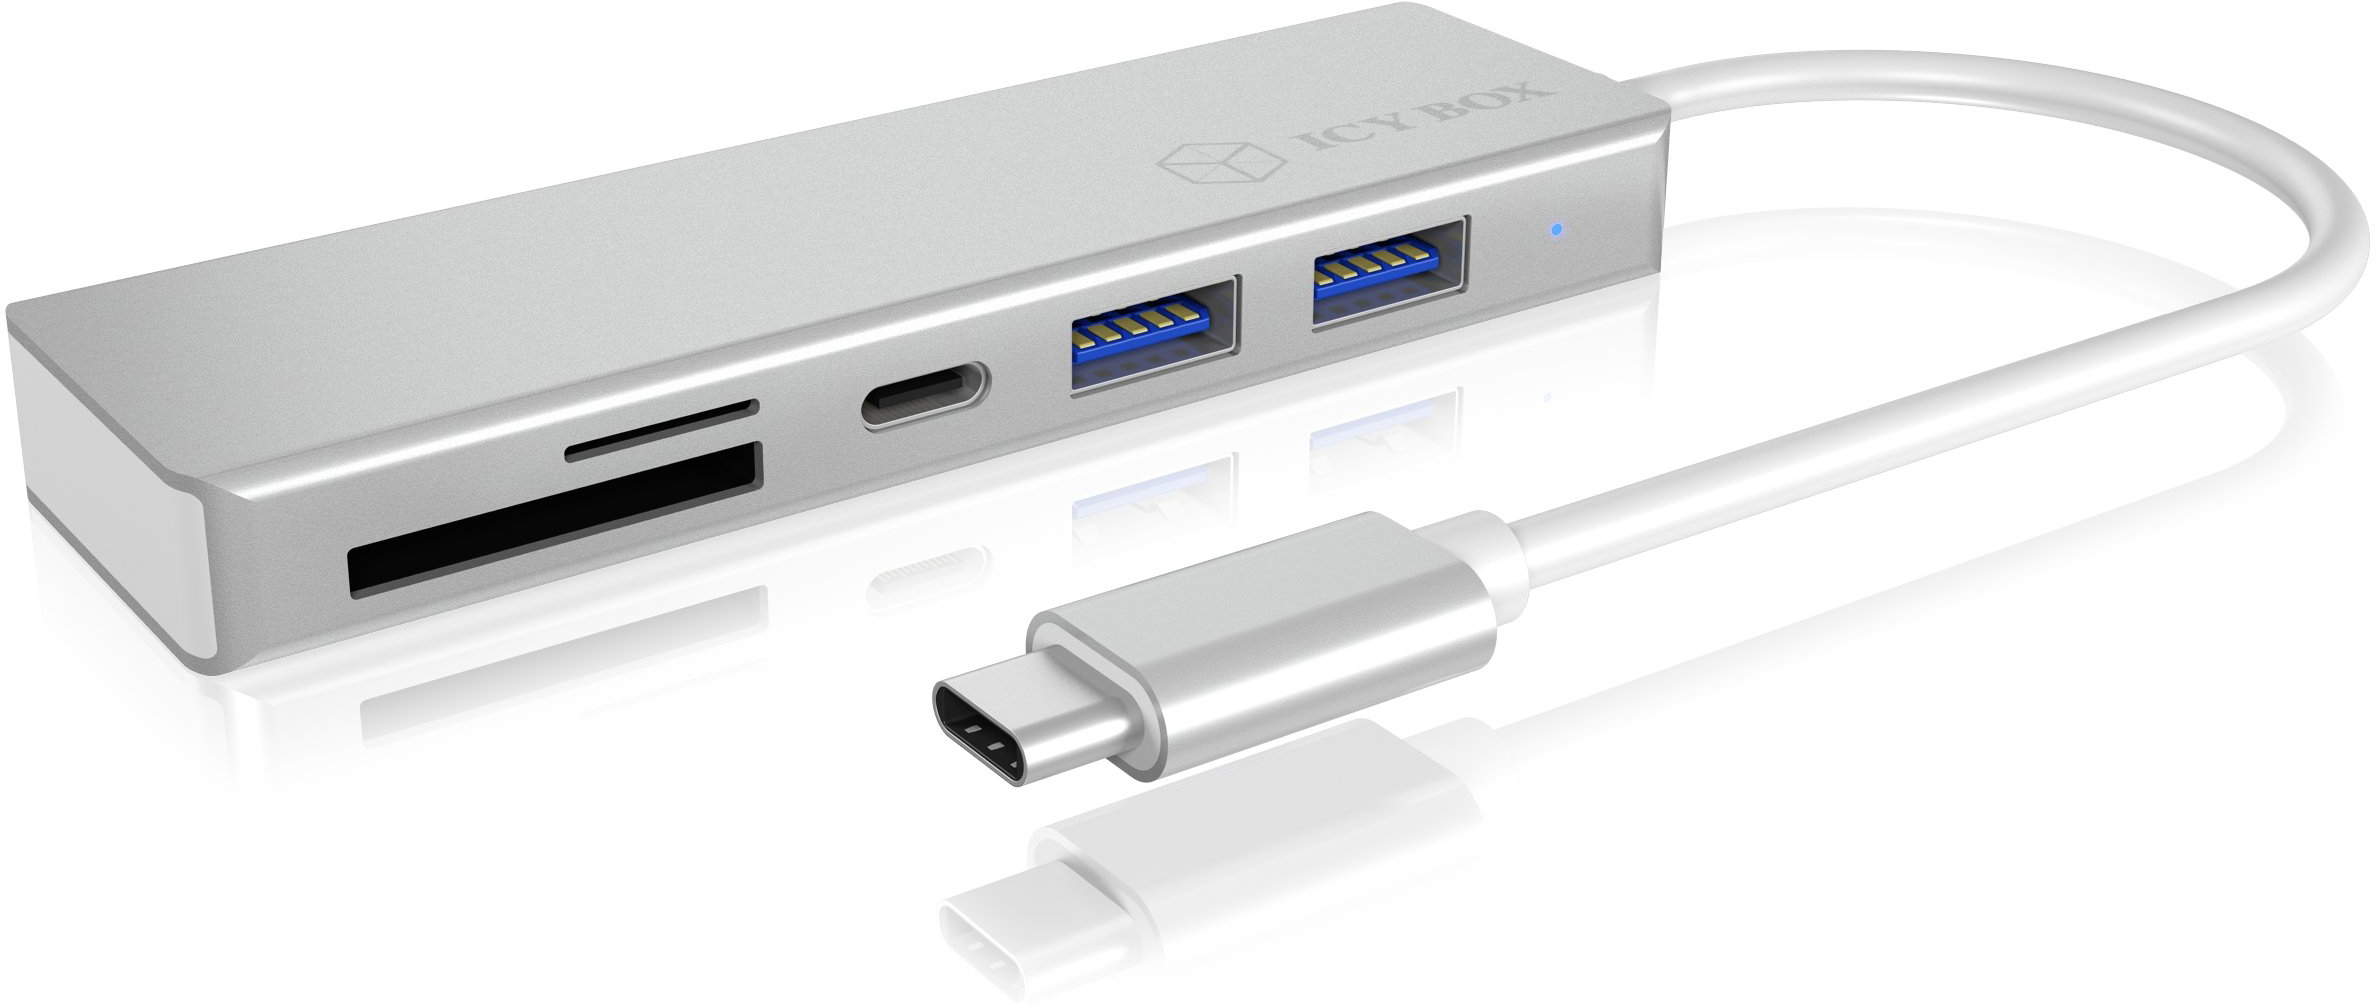 ICY BOX USB 3.0 Type-C Hub IB-HUB1413-C 3USB ports & multi-cardreader